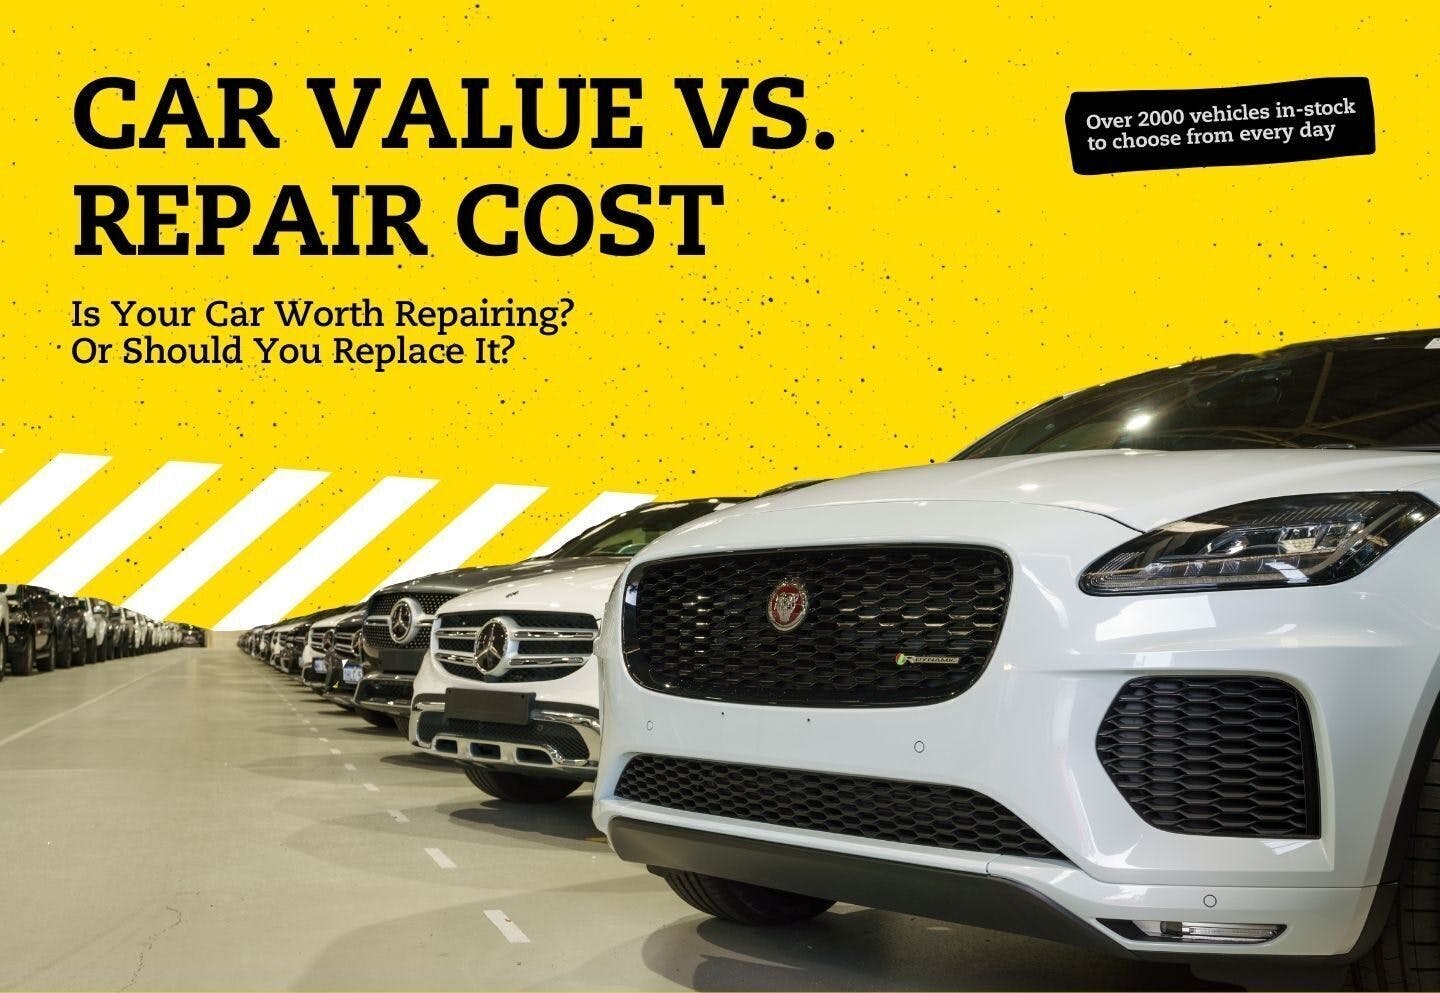 Car Value vs Repair Cost